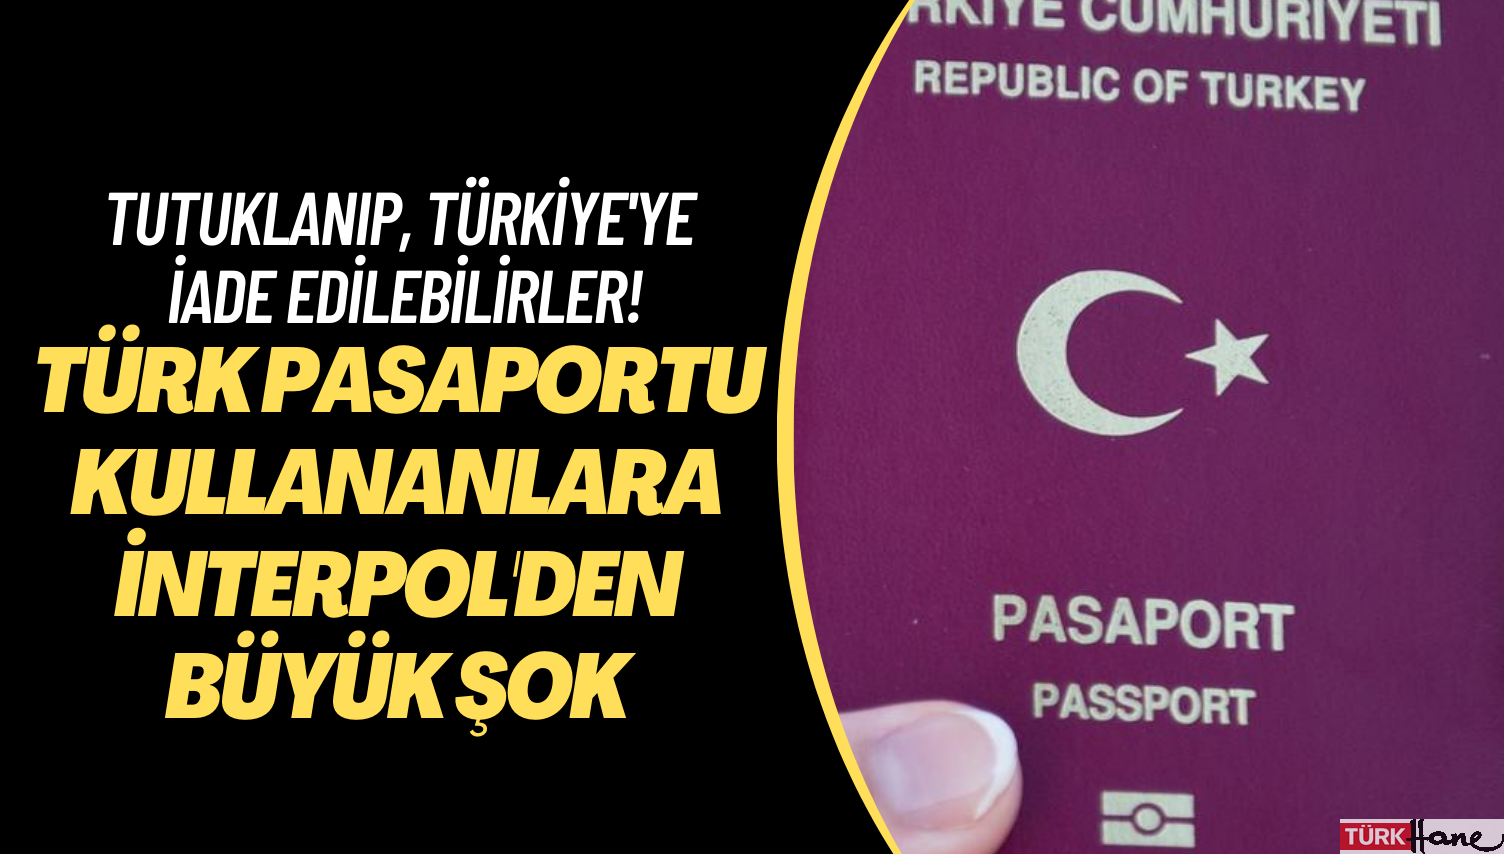 Türk pasaportu kullananlara İnterpol’den büyük şok: Tutuklanıp, Türkiye’ye iade edilebilirler!